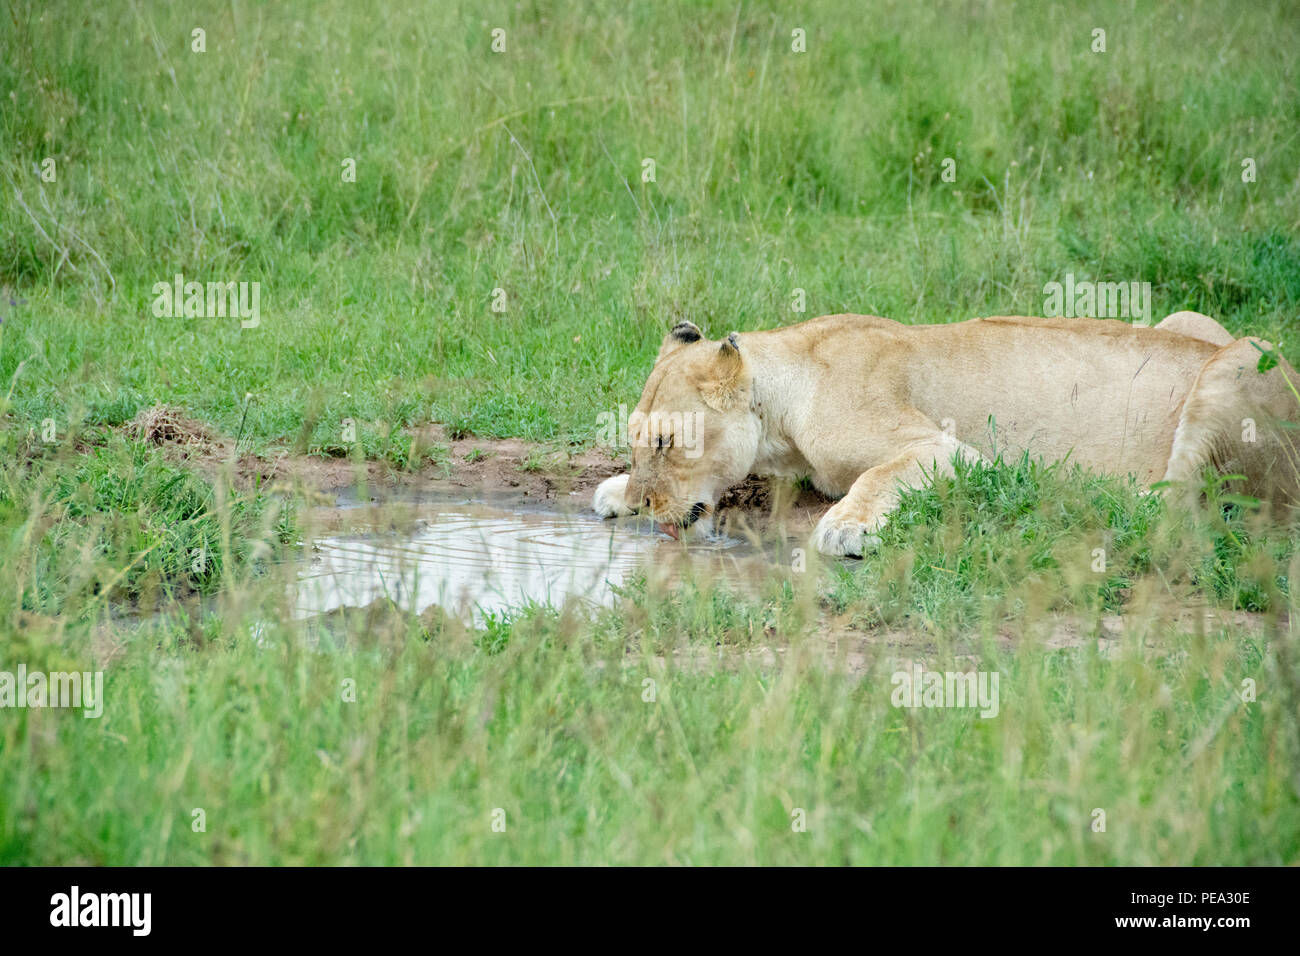 Una leona agua potable para satisfacer sus necesidades de sed en el Parque nacional Serengeti, Tanzania. Foto de stock